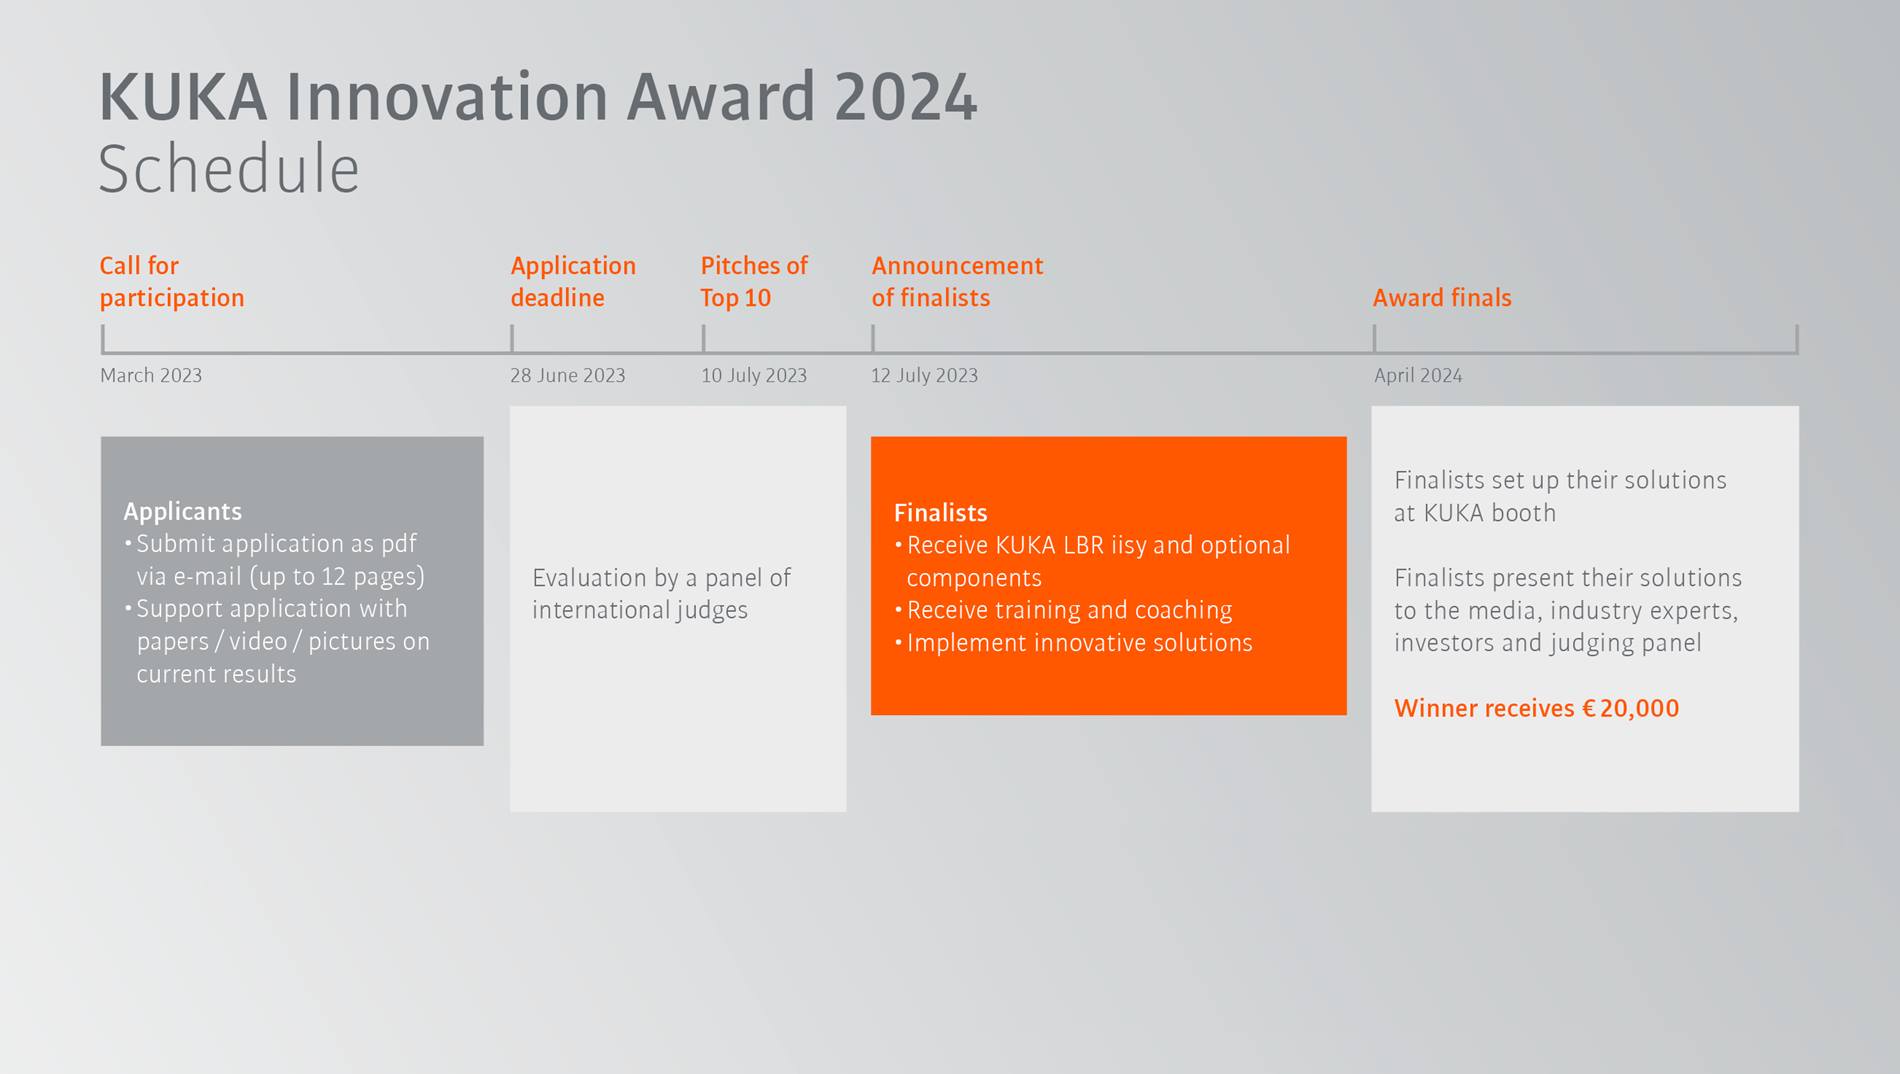 KUKA Innovation Award 2024 timeline